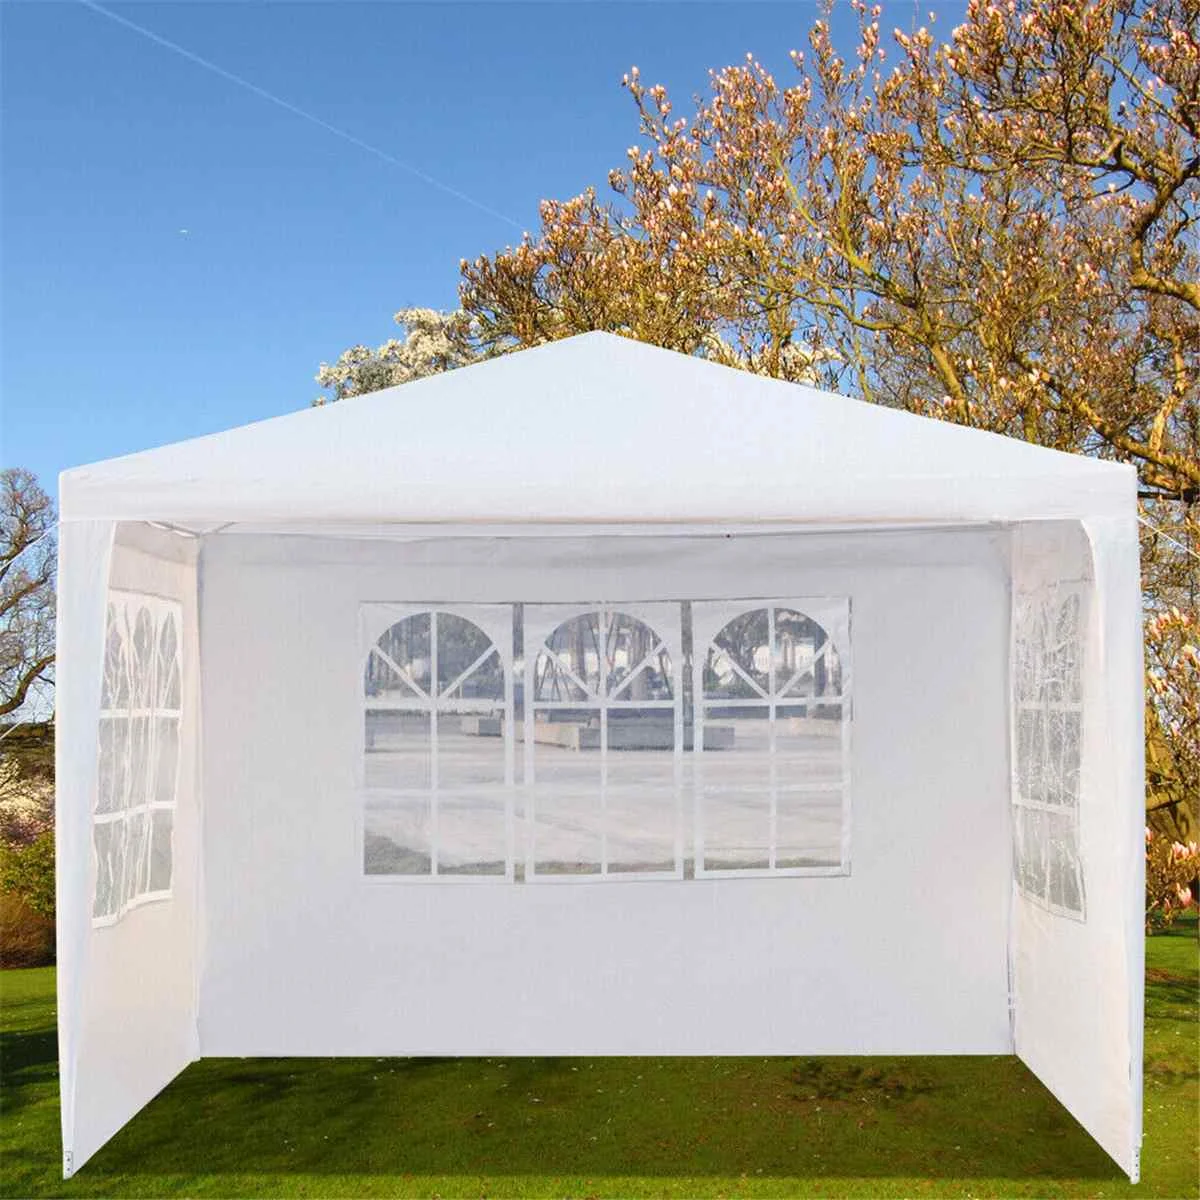 Ткань Оксфорд вечерние палатка Настенный Стороны Водонепроницаемый сад внутренний дворик навес 3x4 м солнце стены навес от солнца укрытие брезент боковины зонт